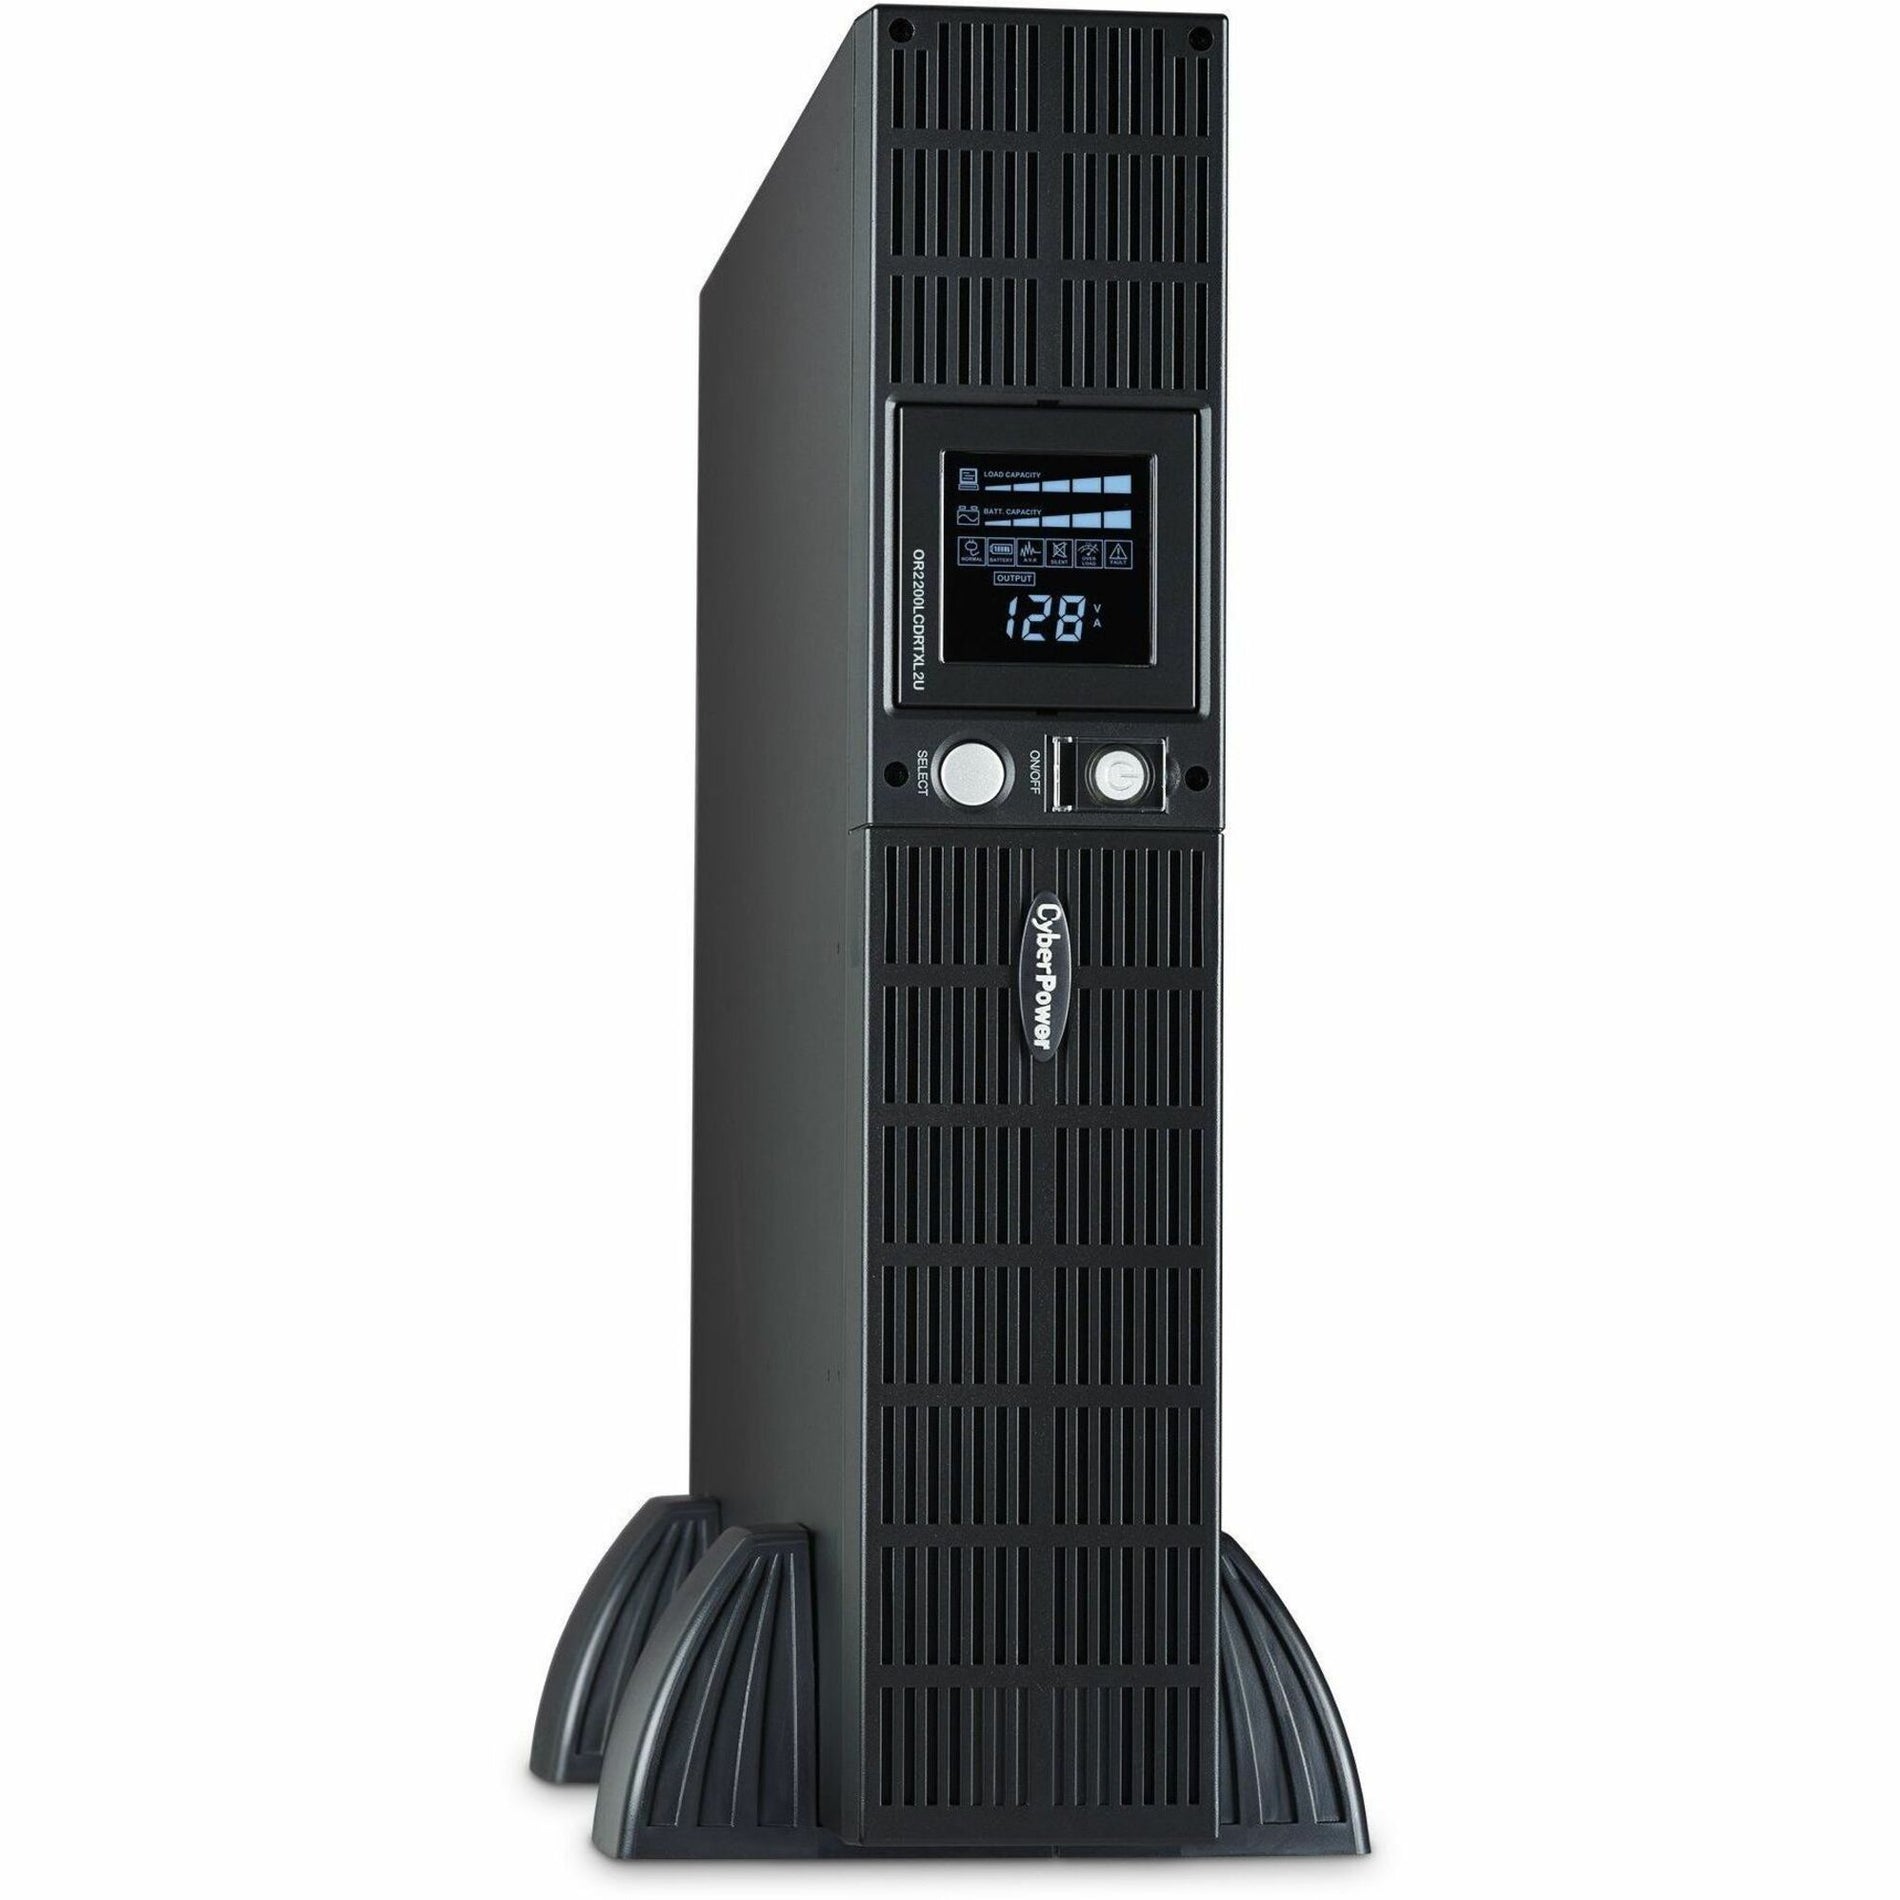 赛博动力 OR2200LCDRTXL2U 智能应用液晶显示 UPS 系统，2190 伏安 塔式/机架式 UPS 赛博动力